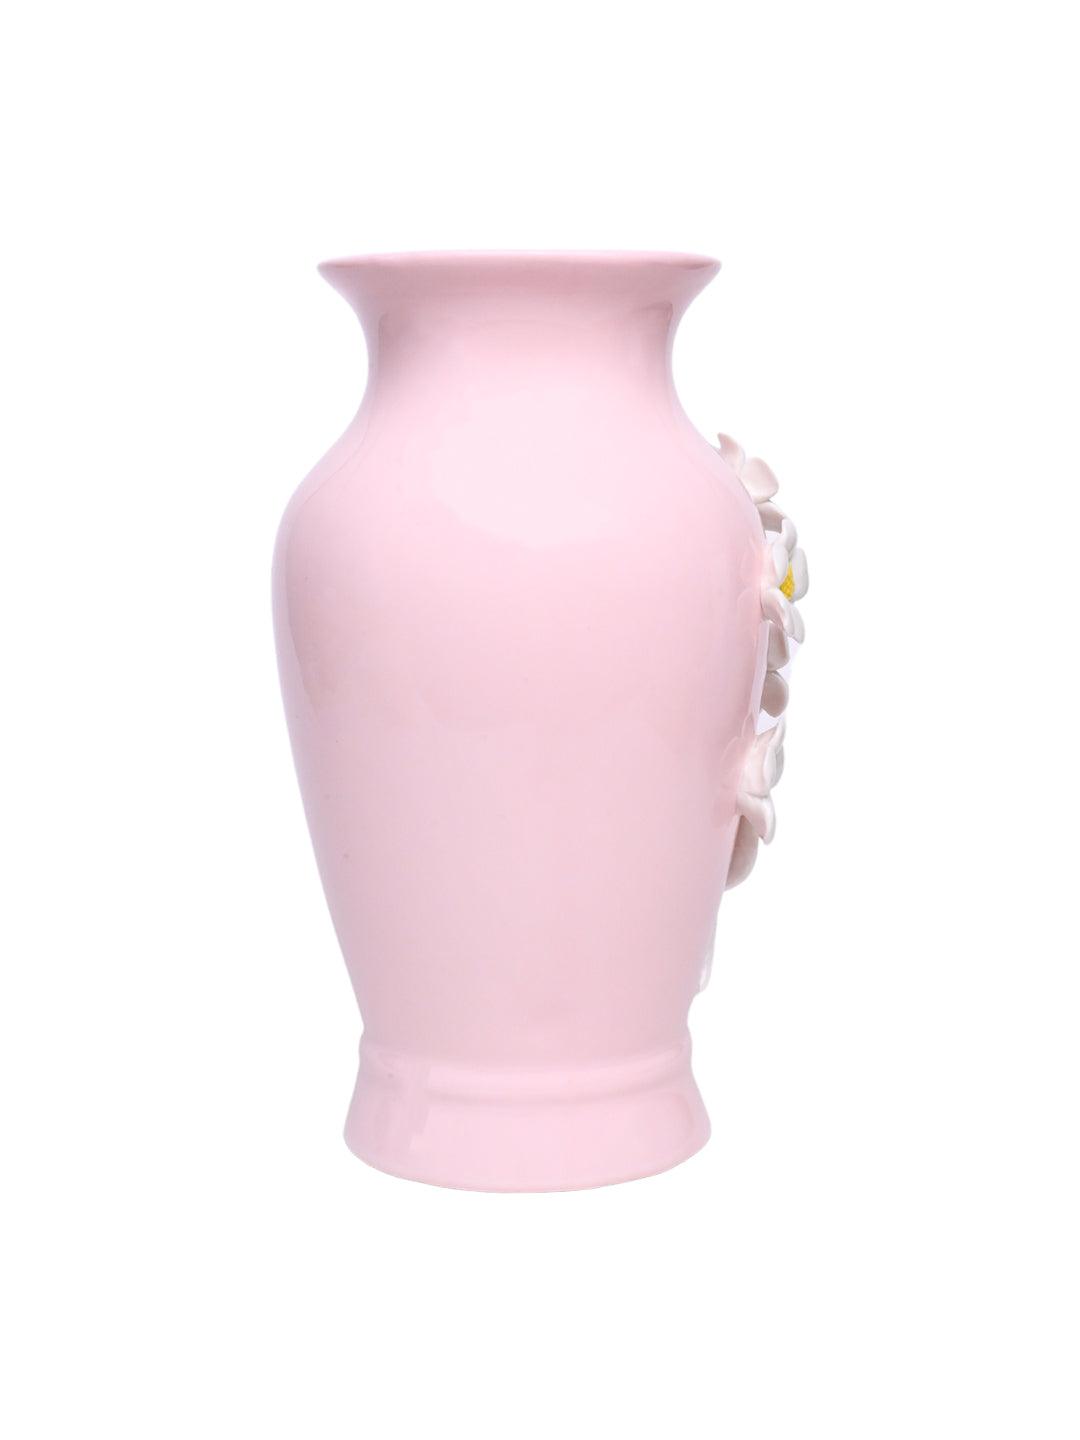 Dark Pink Ceramic Curvy Vase - Engraved Floral Pattern, Flower Holder - MARKET 99